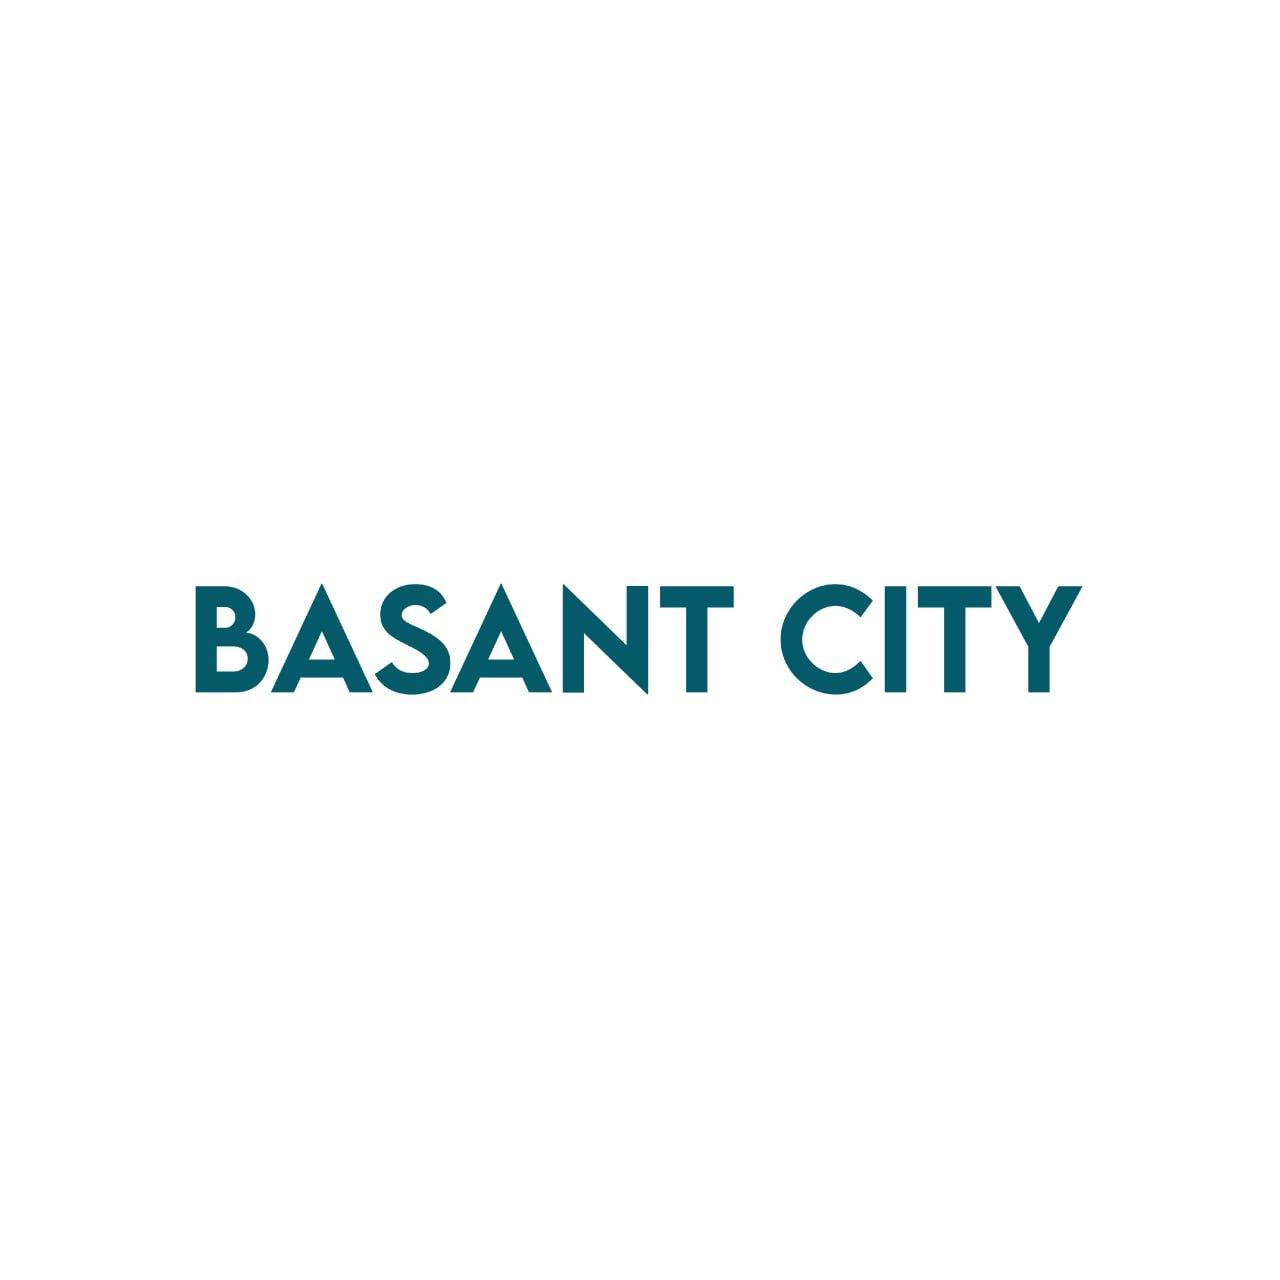 BasantCity